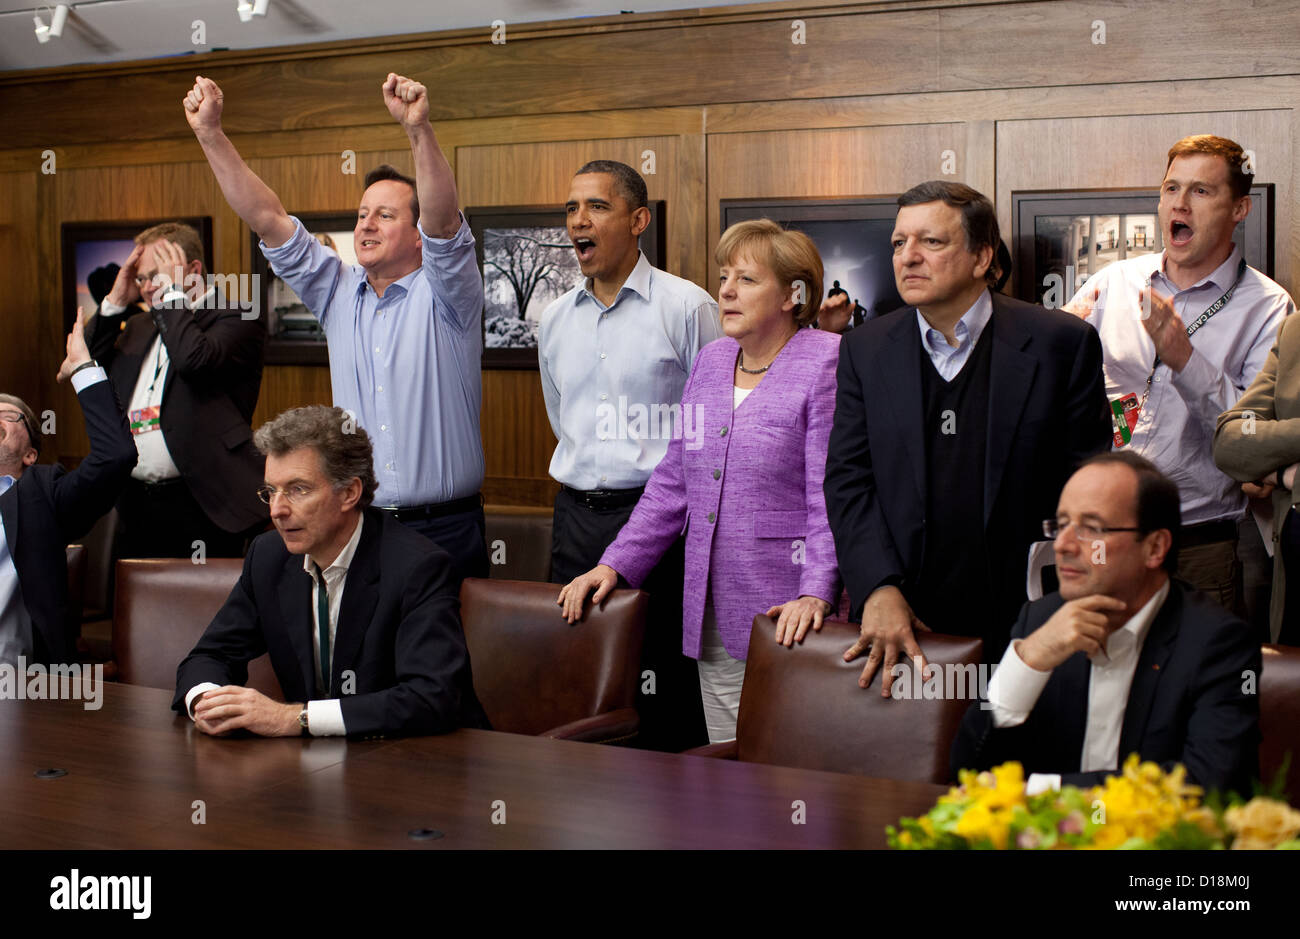 David Cameron, Primer Ministro del Reino Unido, el presidente Barack Obama, la Canciller Angela Merkel de Alemania, José Manuel Foto de stock